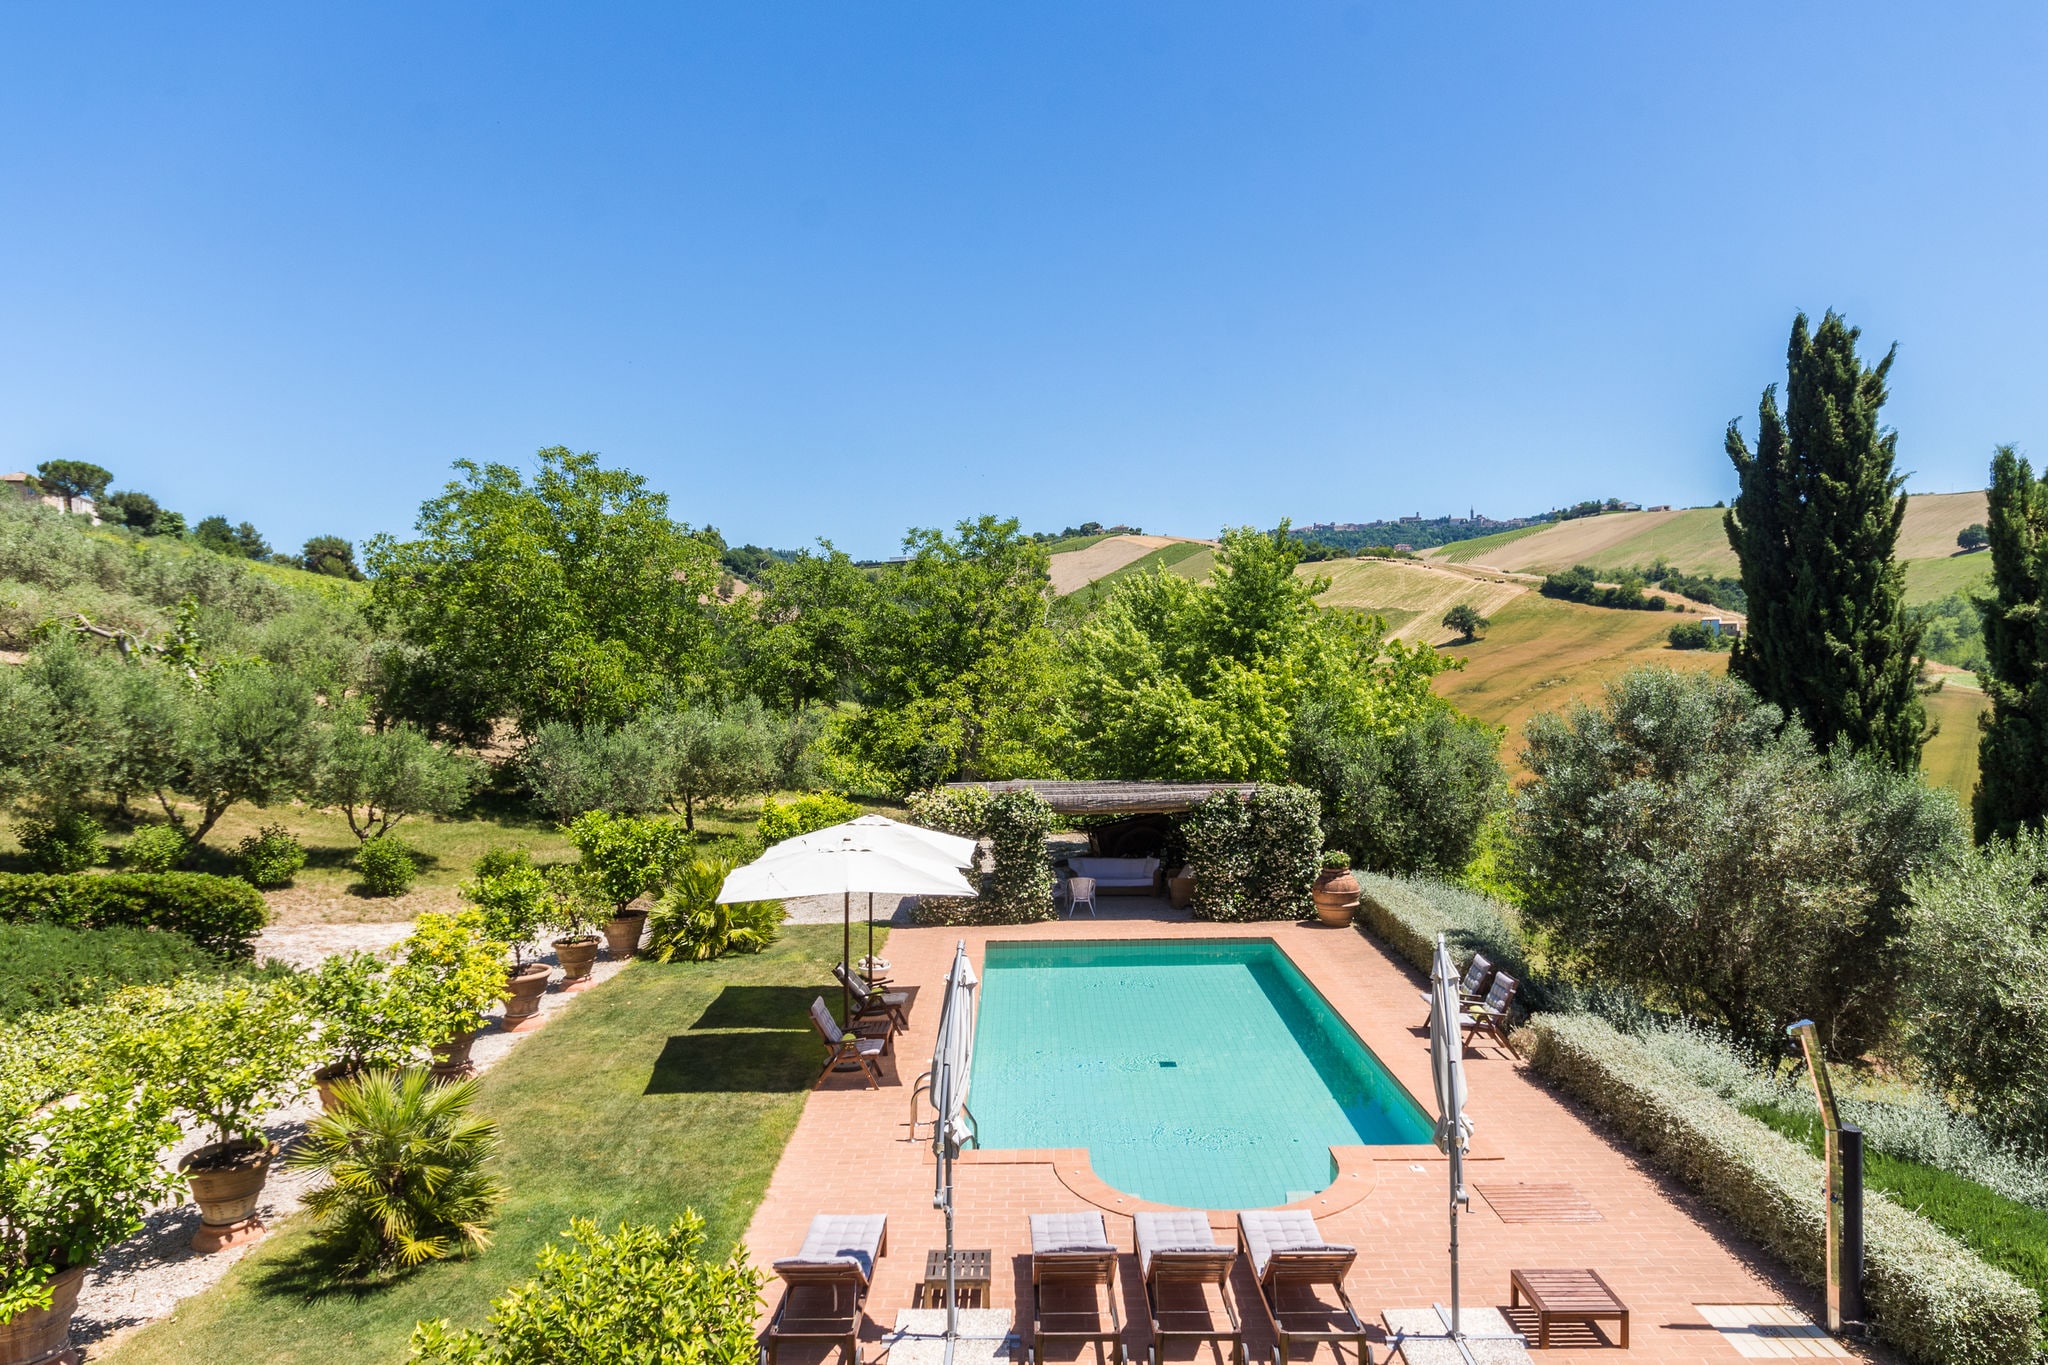 Prachtige villa met privézwembad in een heuvelachtige omgeving